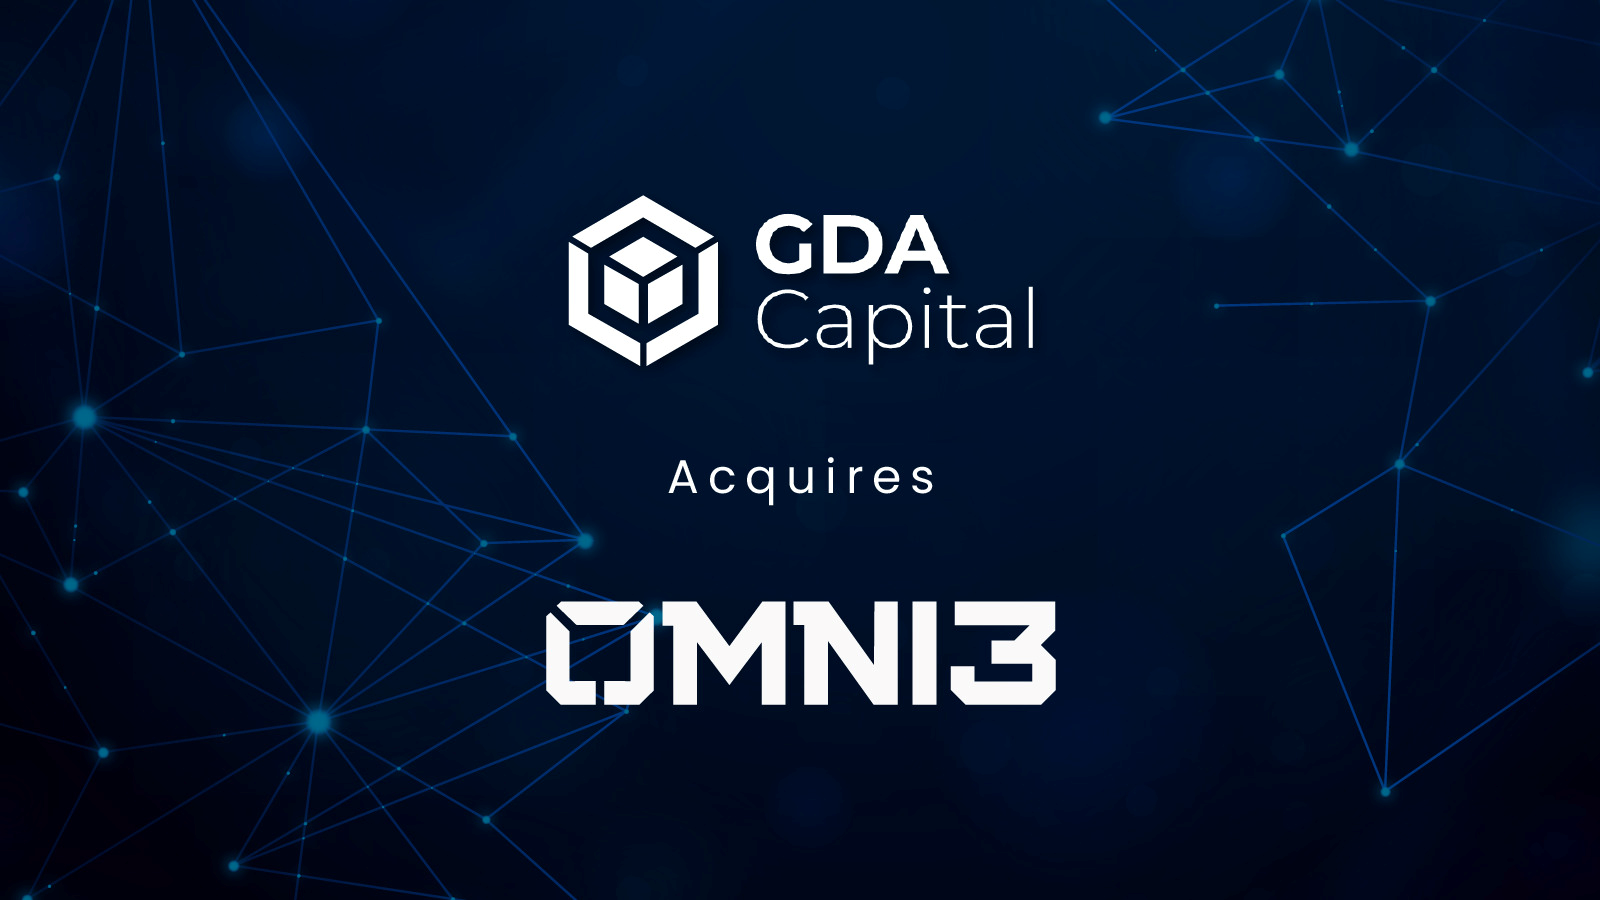 GDA Capital adquiere Omni3 y se expande a Singapur con el nuevo Blockchain PlatoBlockchain Data Intelligence, líder en juegos. Búsqueda vertical. Ai.